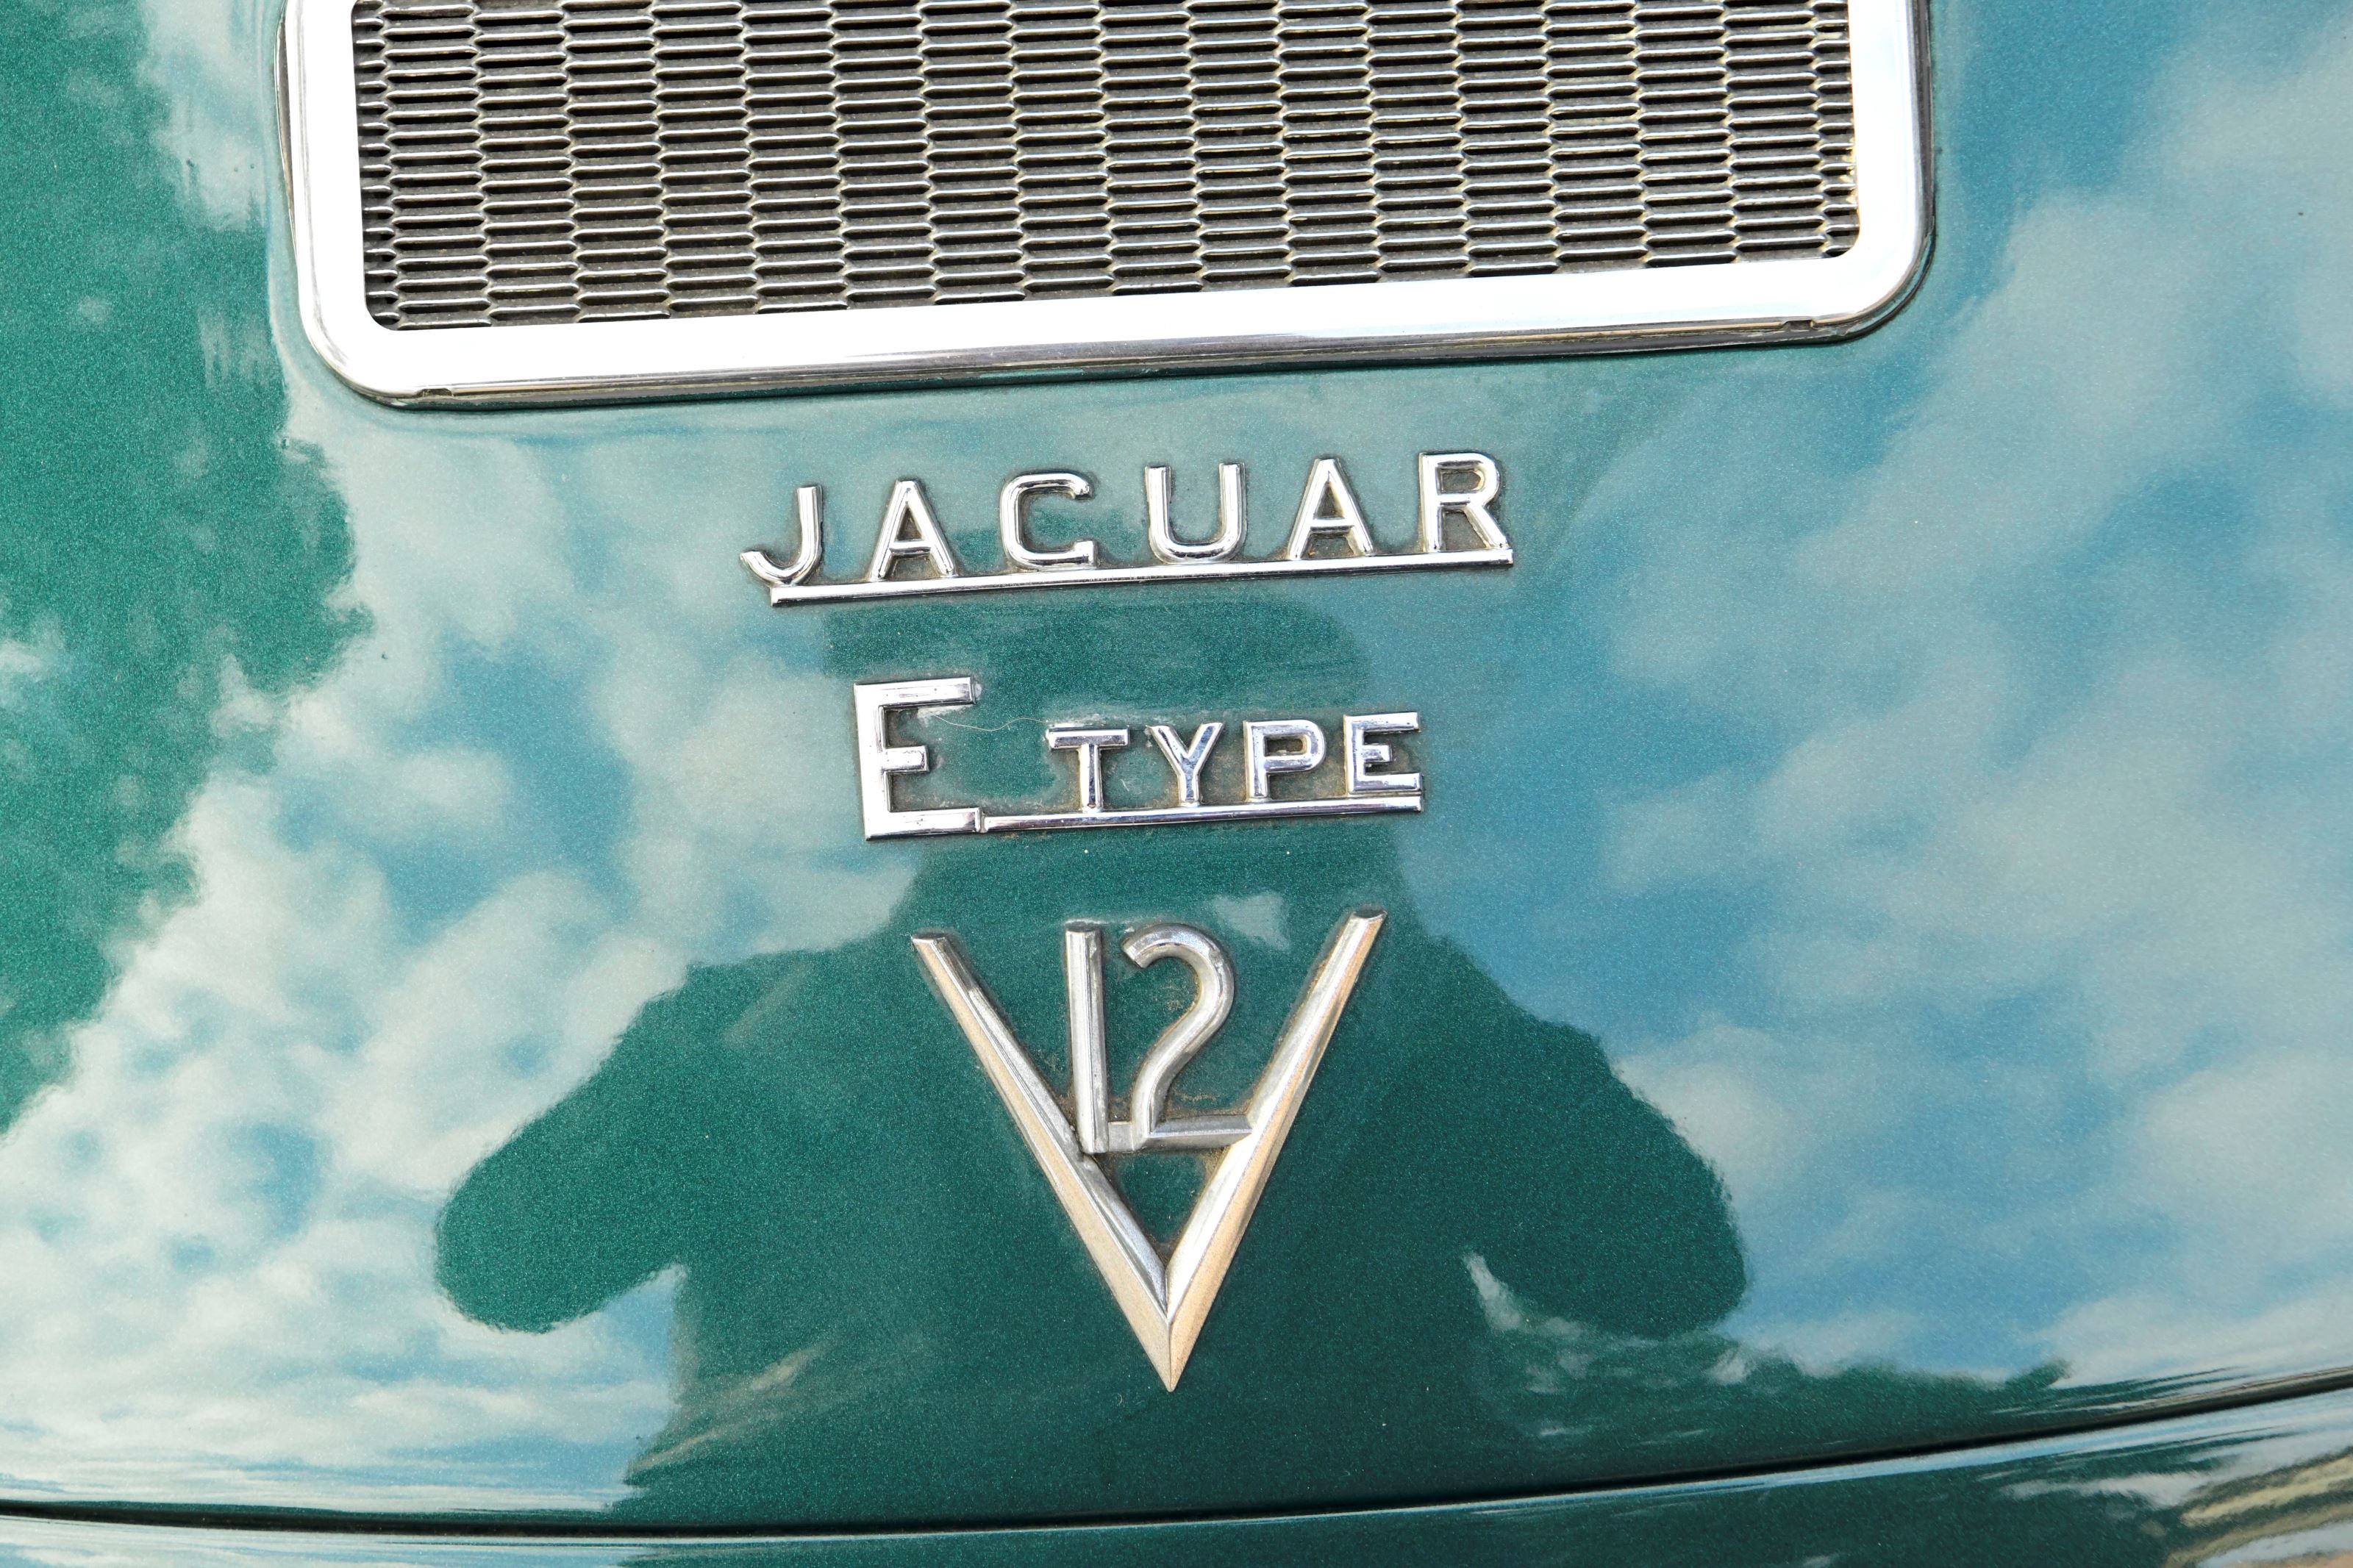 Jaguar e type v12 auto lhd coupe baei niqzkmhqwcexe7sk